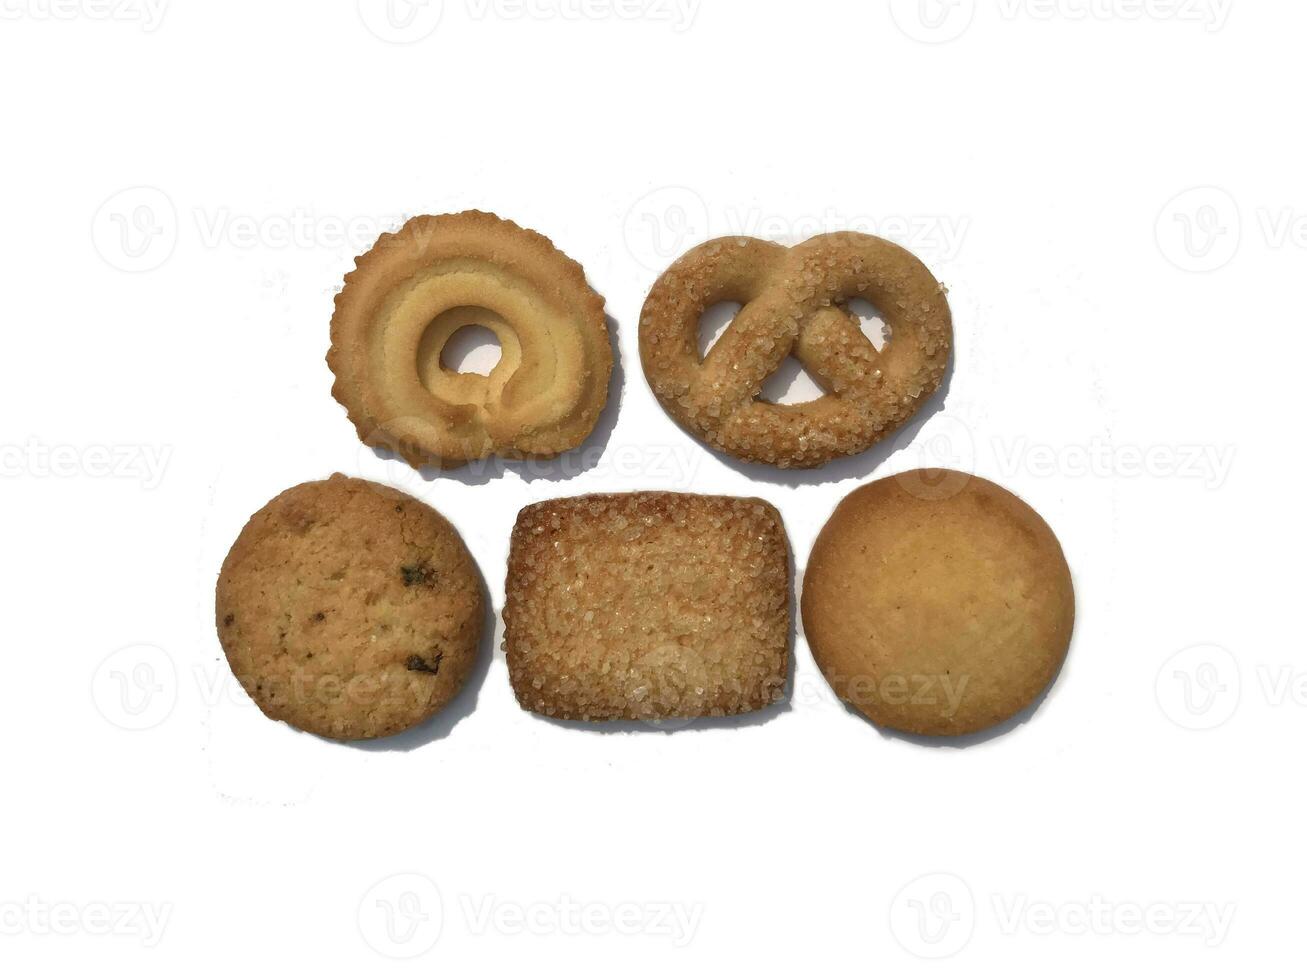 divers koekje vormen zijn geïsoleerd Aan een wit achtergrond. foto